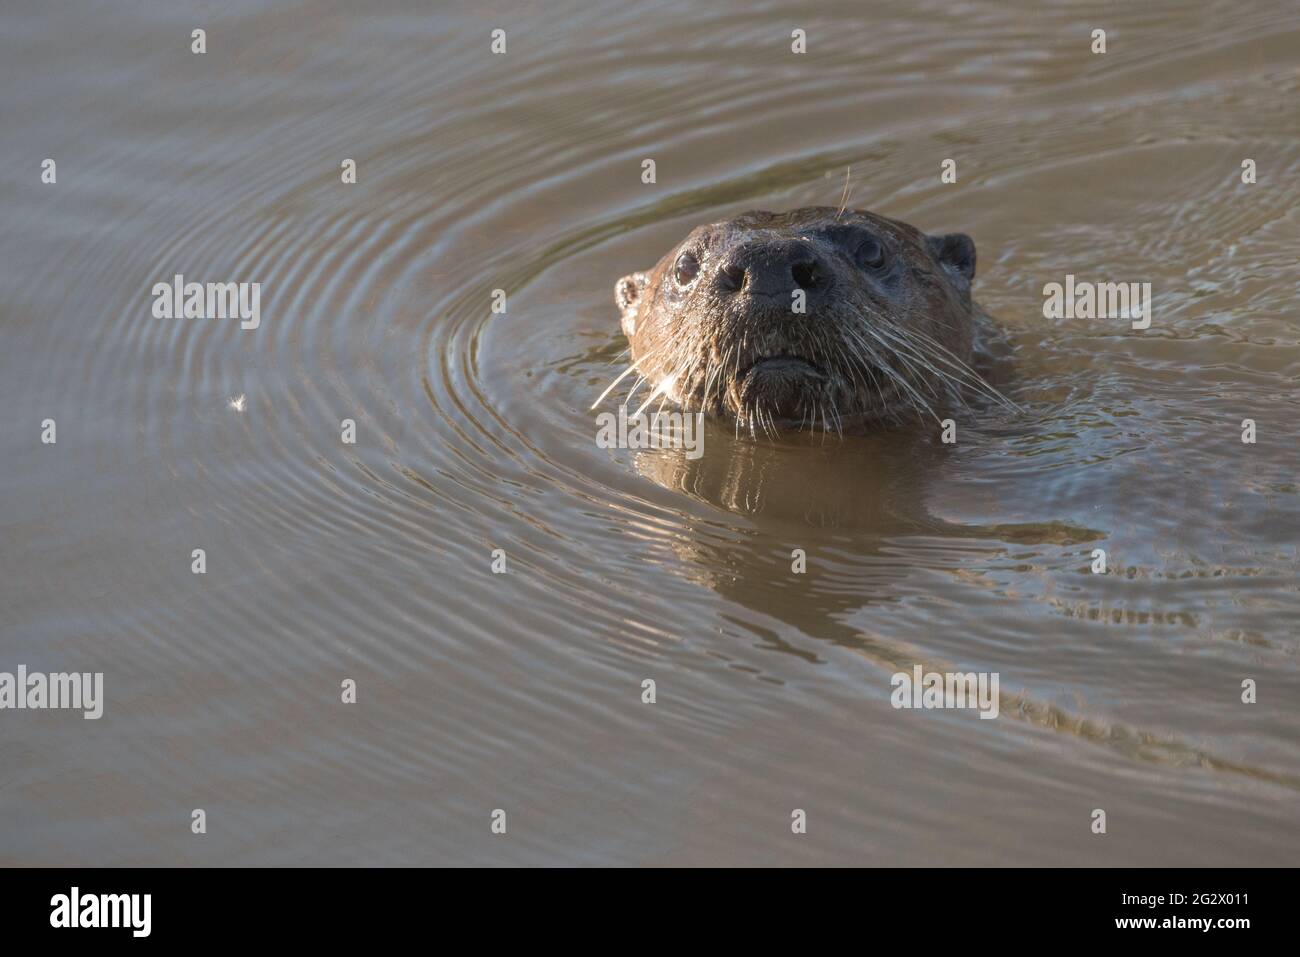 Loutre de rivière nord-américaine (Lontra canadensis) nageant dans un canal dans la zone sauvage de la dérivation de Yolo, près de Sacramento, en Californie. Banque D'Images